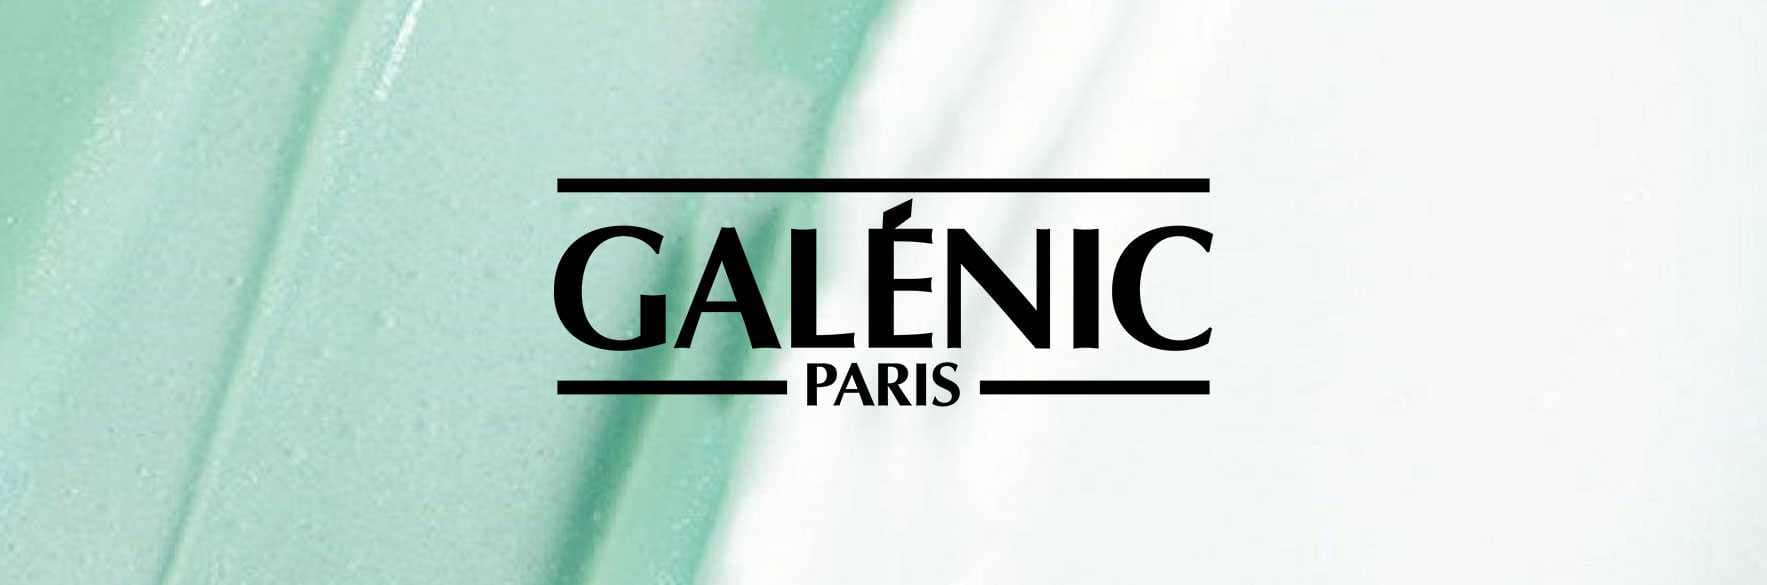 خرید محصولات گلنیک GALENIC